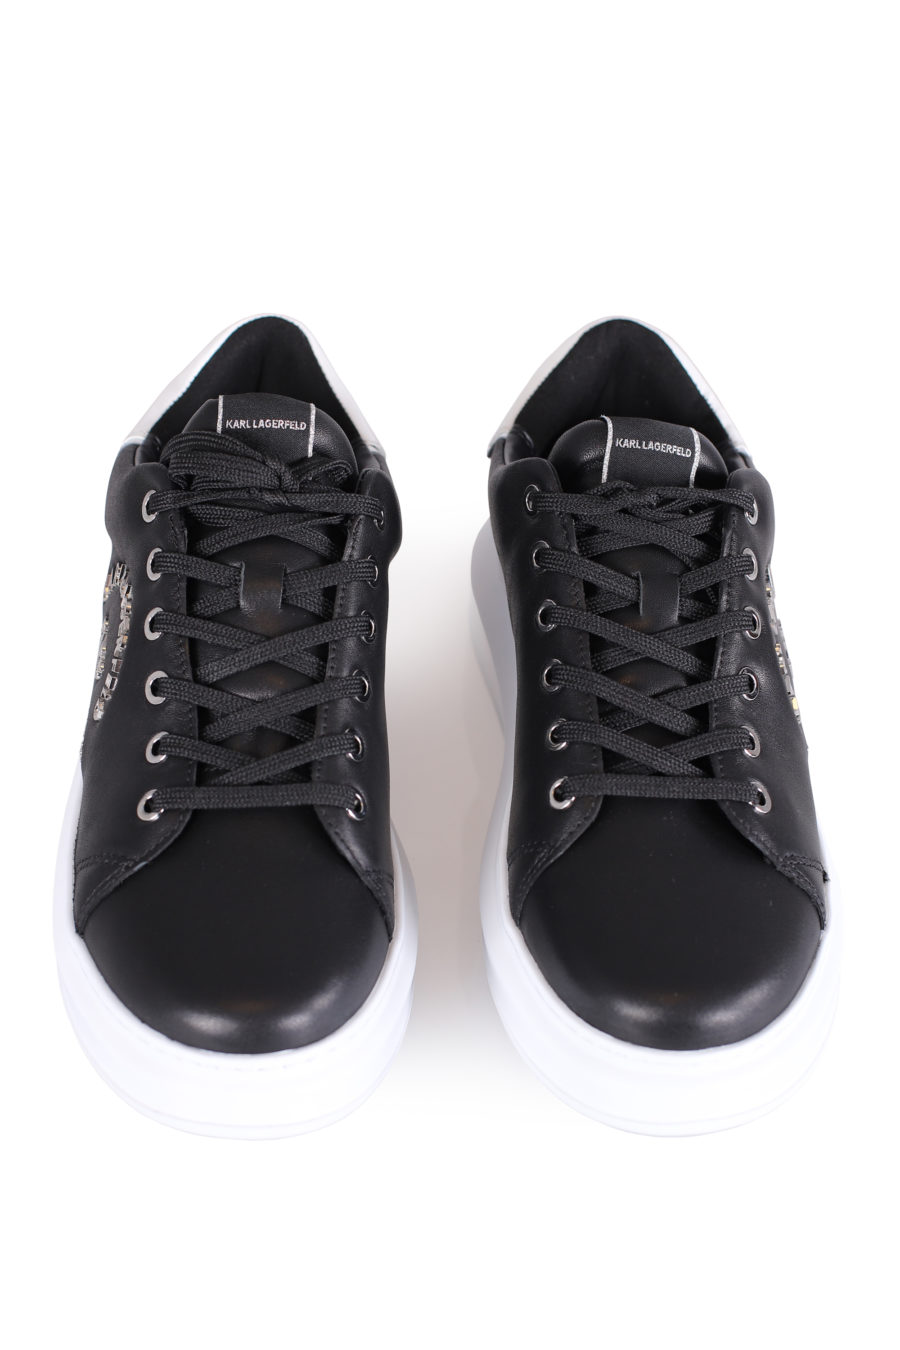 Zapatillas negras con logotipo "Maison" plateado - IMG 0790